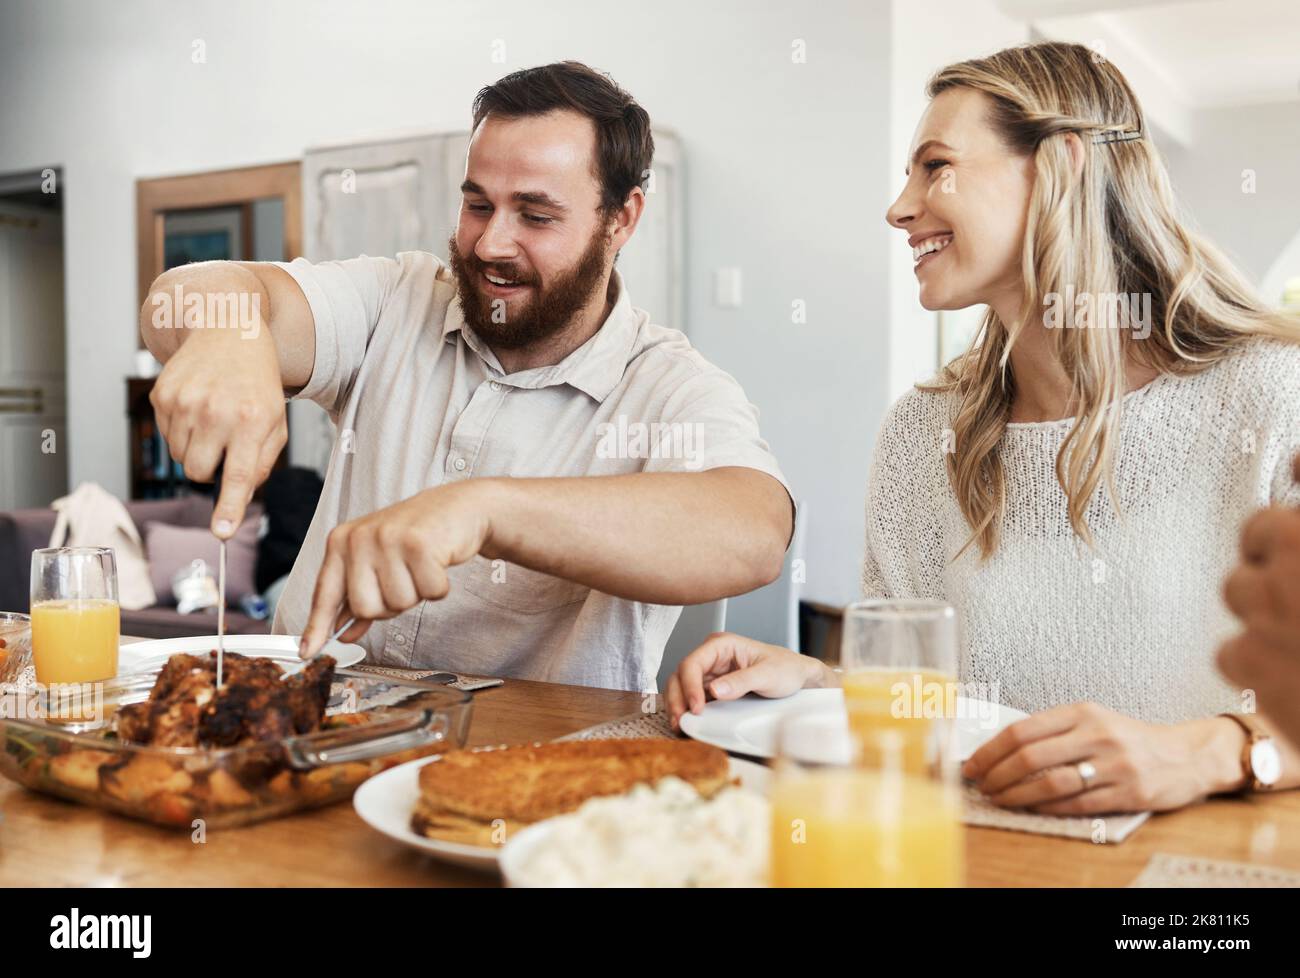 Famille, nourriture et homme coupant du poulet au dîner avec une femme souriant, mangeant et buvant ensemble dans la salle à manger. Heureux, attention et célébrer, partager Banque D'Images